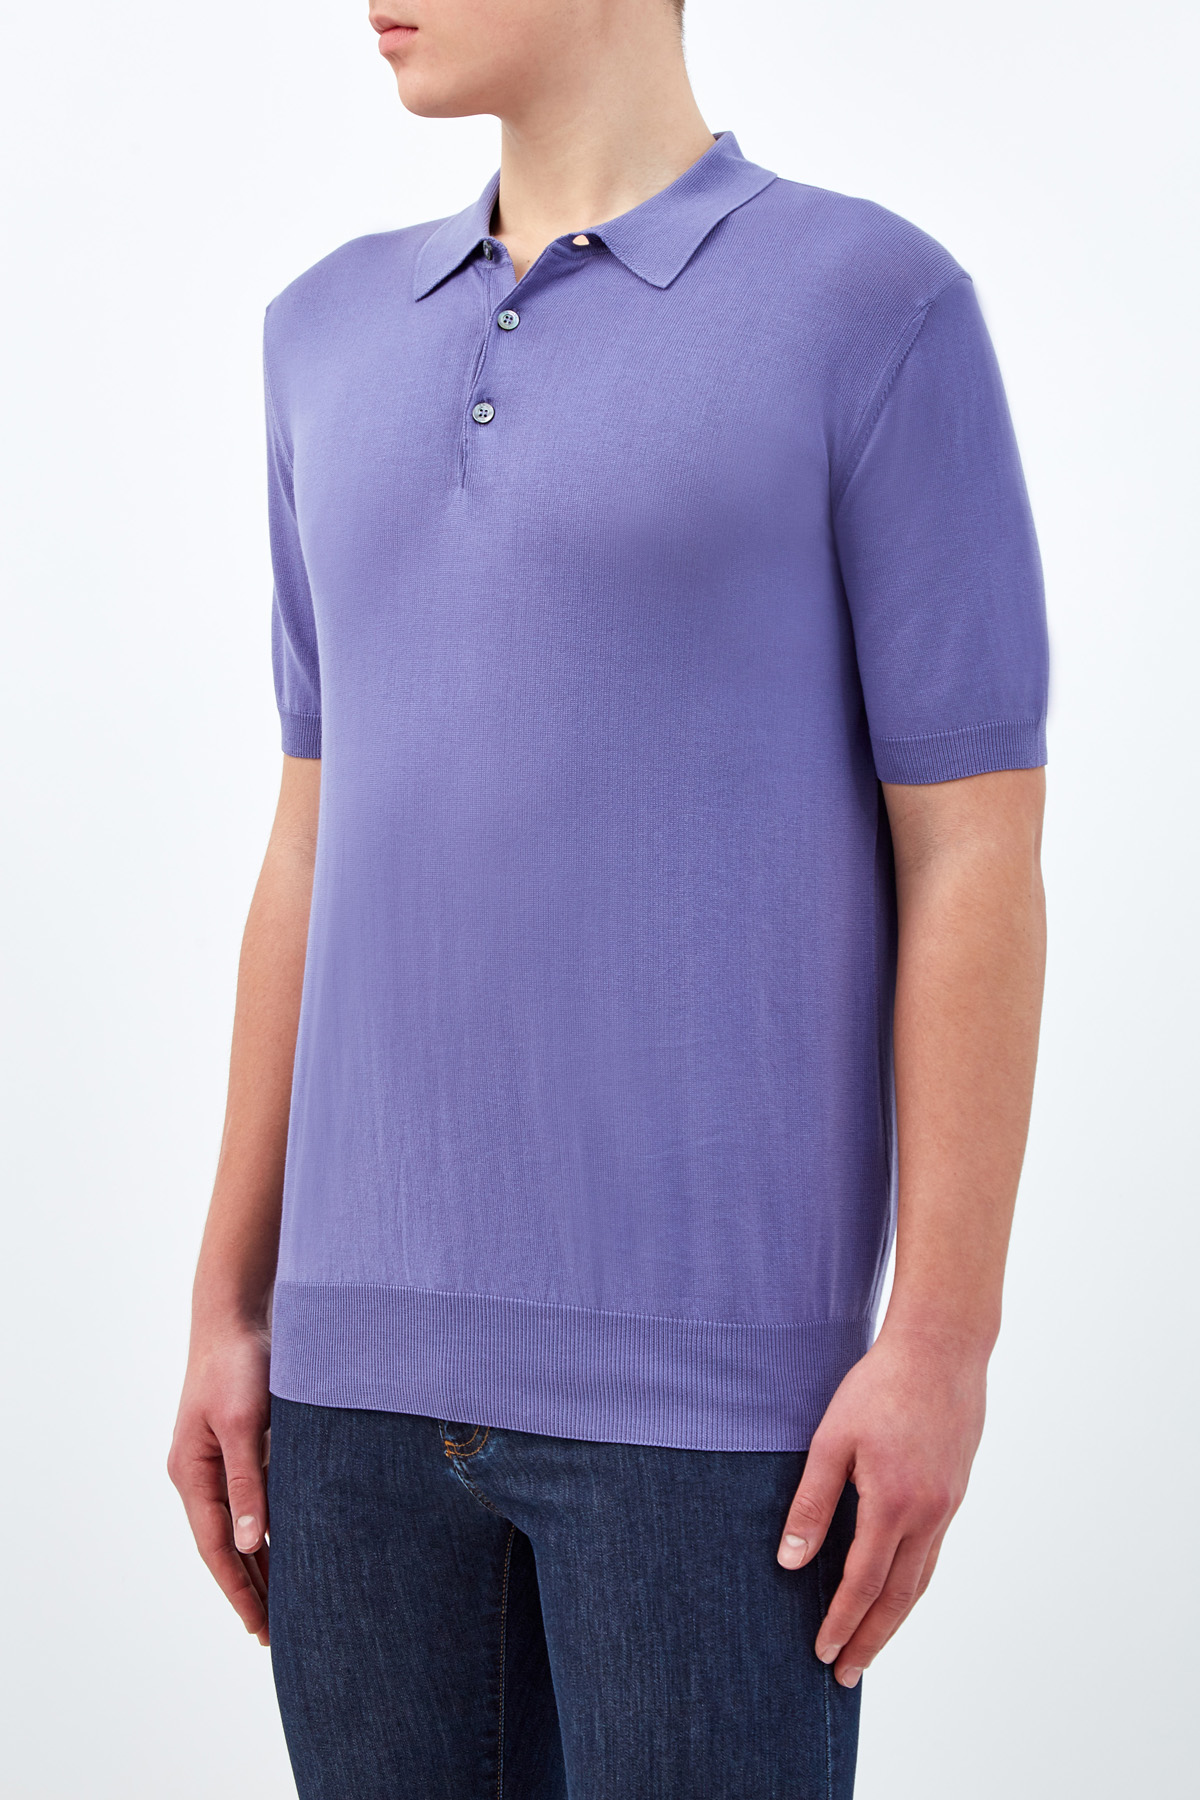 Джемпер-поло из легкой хлопковой пряжи CANALI, цвет фиолетовый, размер 52;60 - фото 3